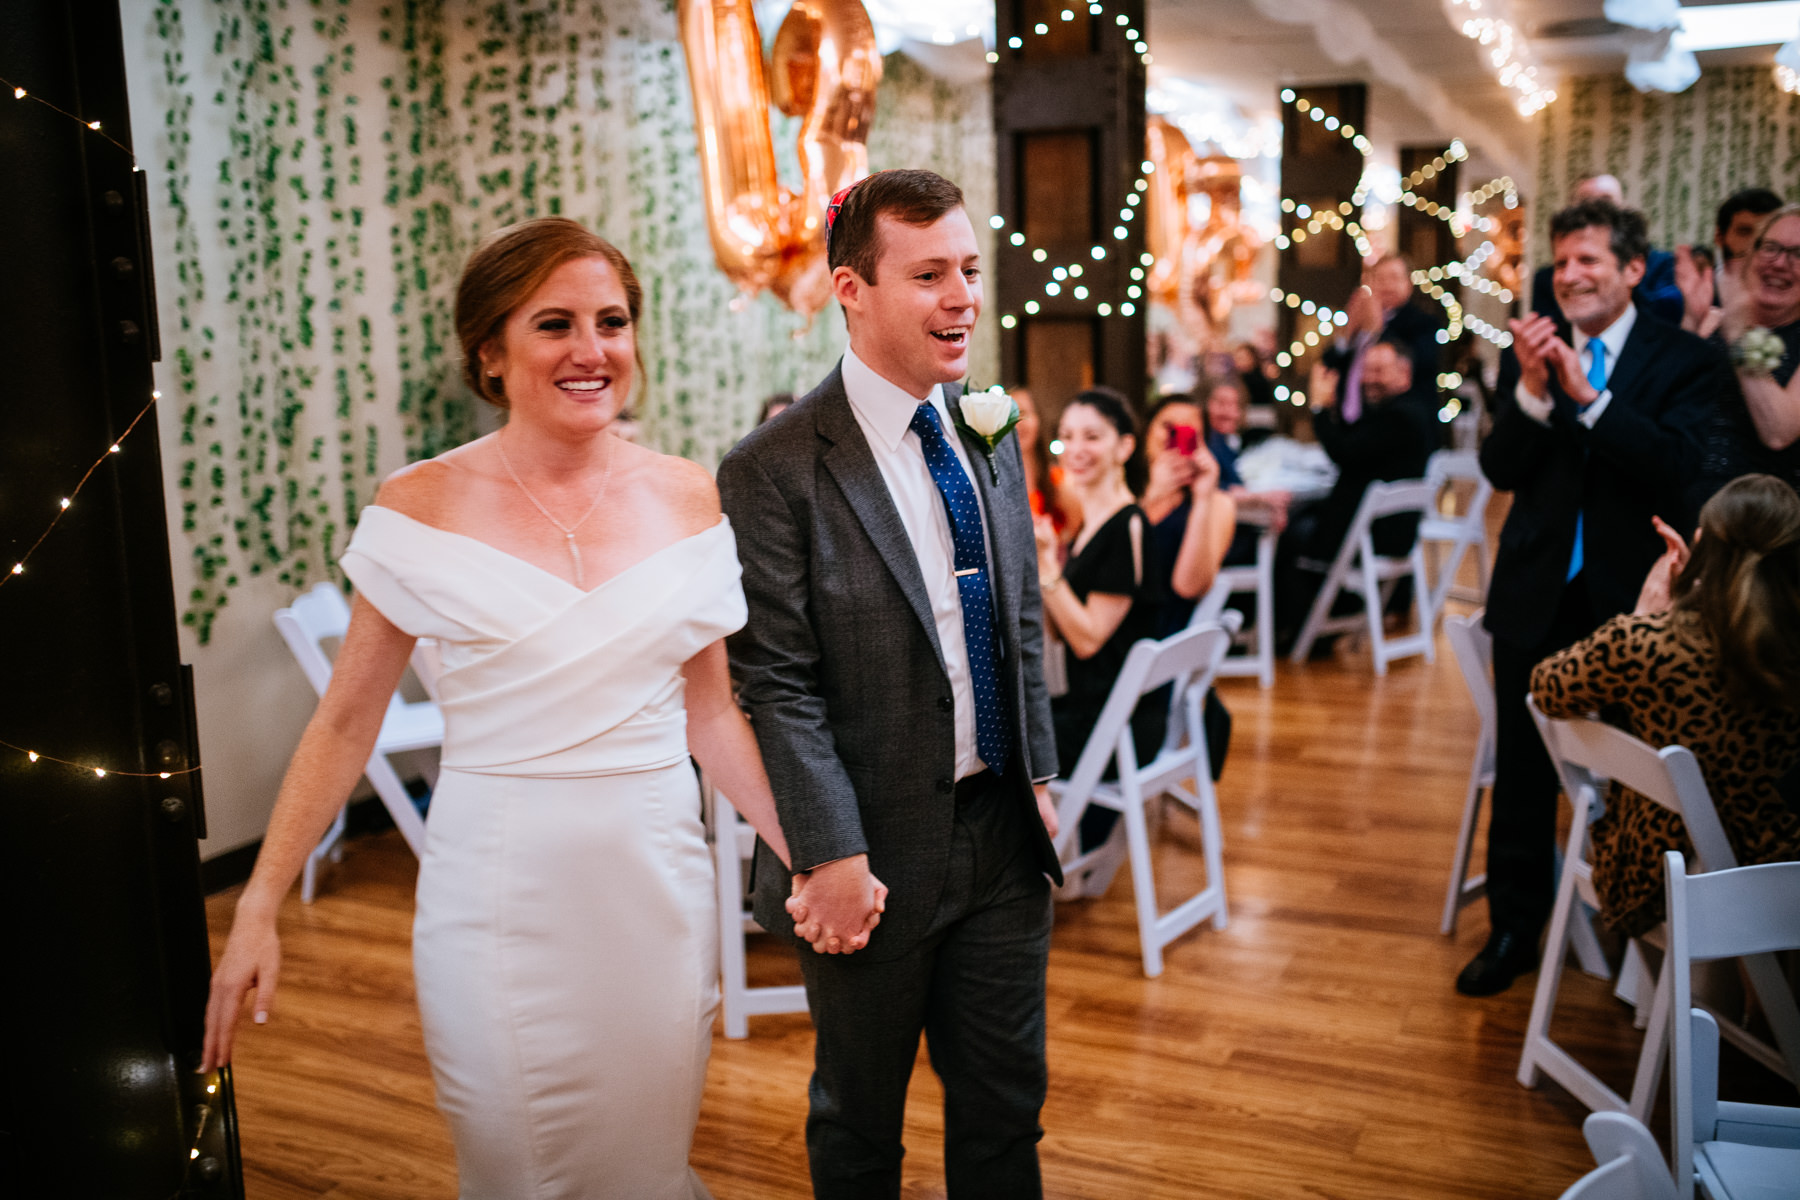 bride and groom enter reception